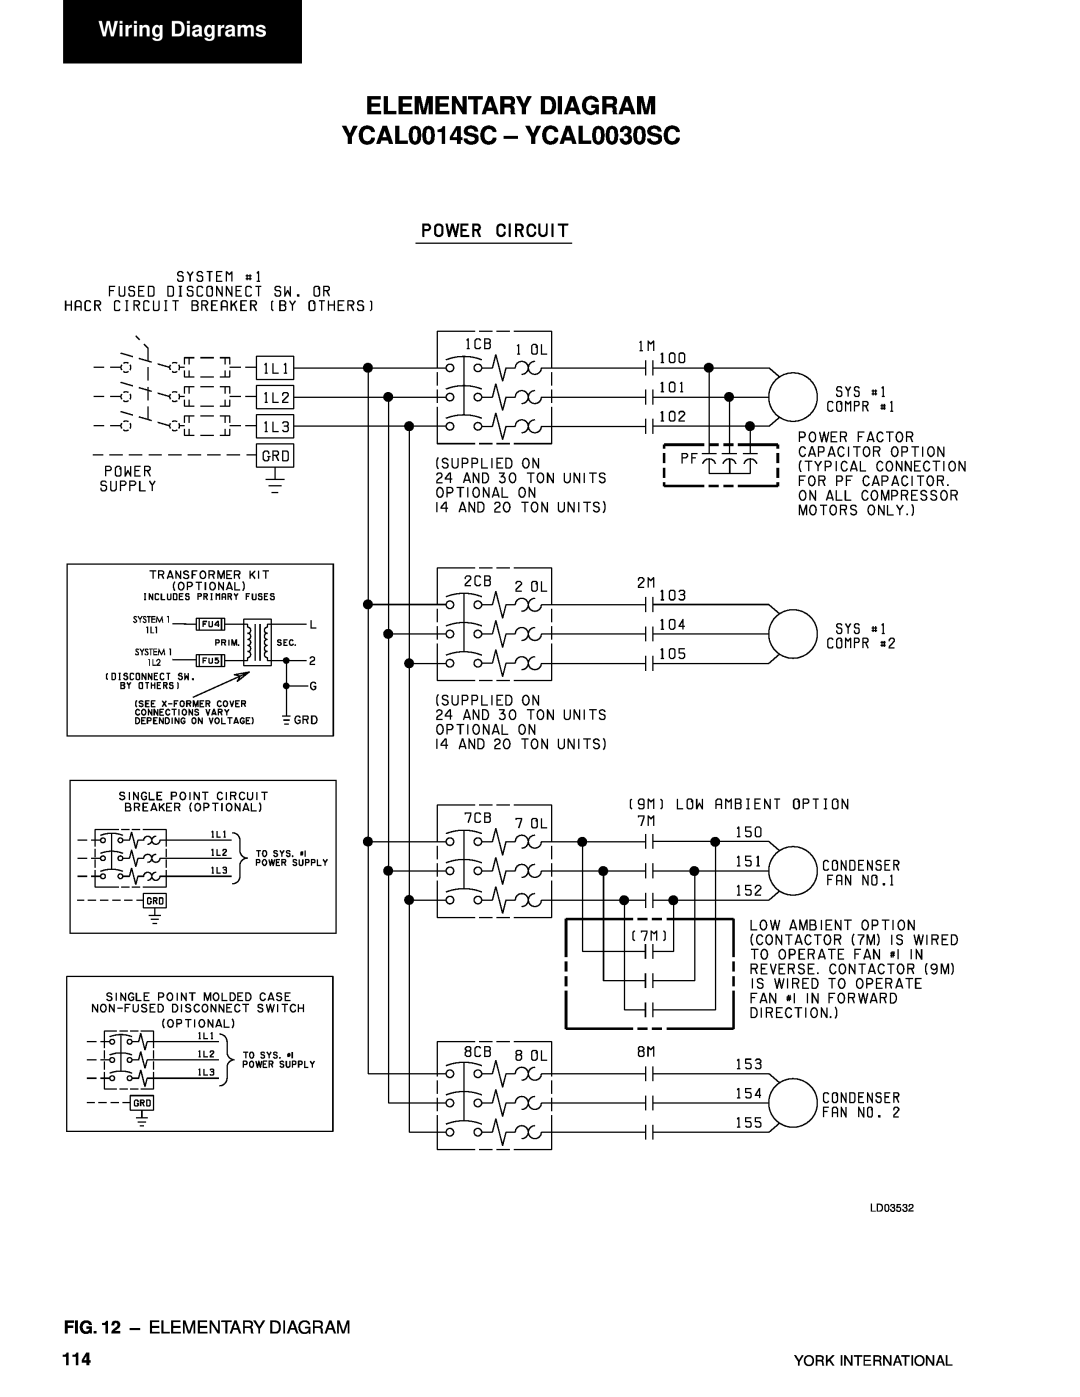 York YCAL0080SC manual ELEMENTARY DIAGRAM YCAL0014SC – YCAL0030SC, Wiring Diagrams, Elementary Diagram, LD03532 